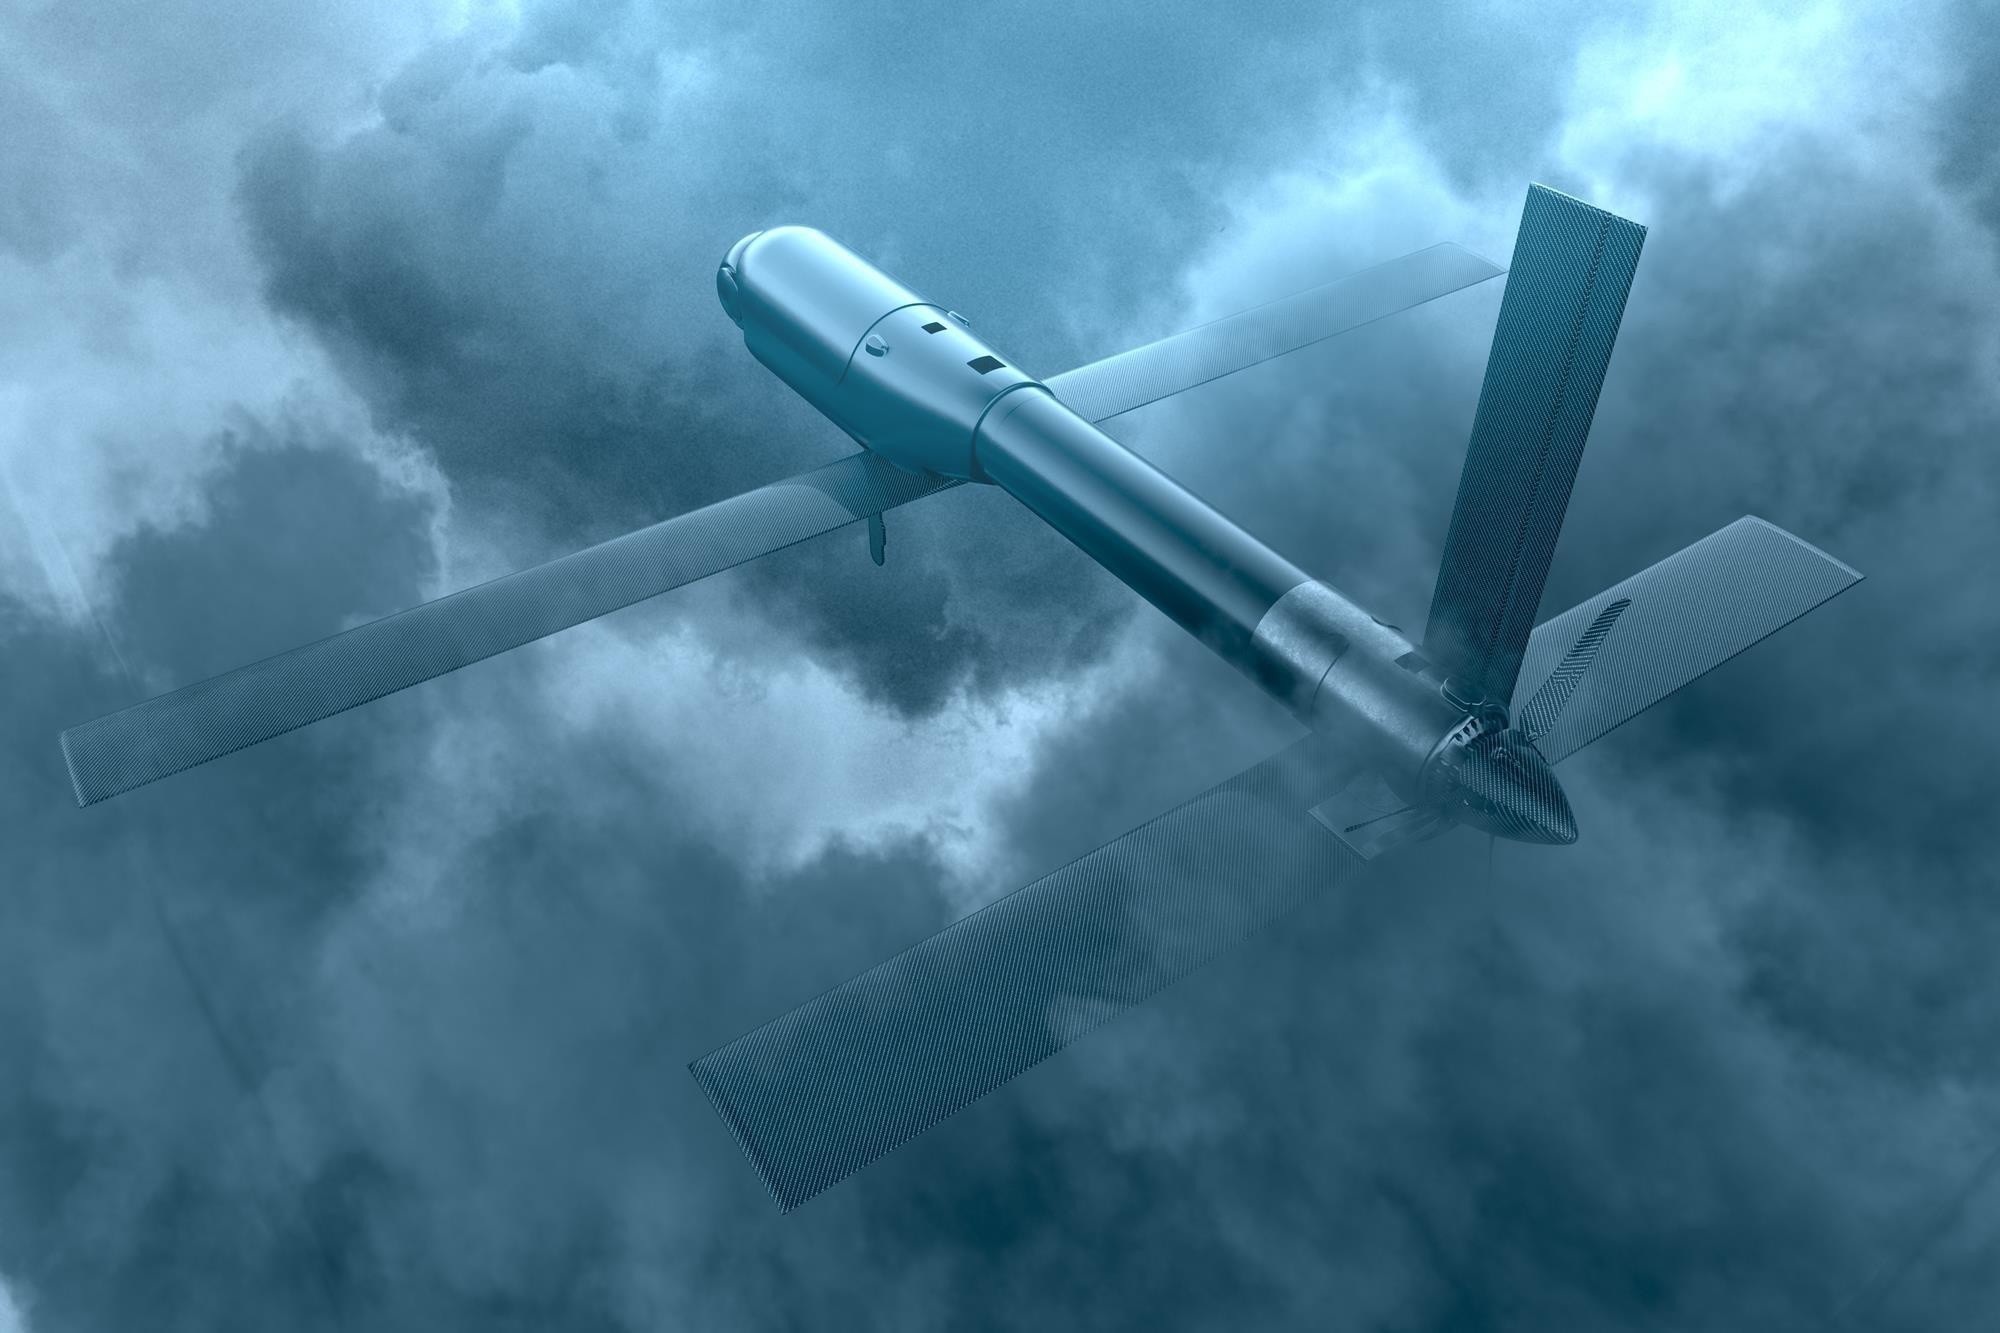  Switchblade trang bị các camera cảm biến, hệ thống dẫn đường và thuốc nổ. Loại UAV này có thể được điều khiển bay lượn quanh chiến trường, trước khi sà xuống tiêu diệt mục tiêu đối phương trên mặt đất. (Nguồn: AP)